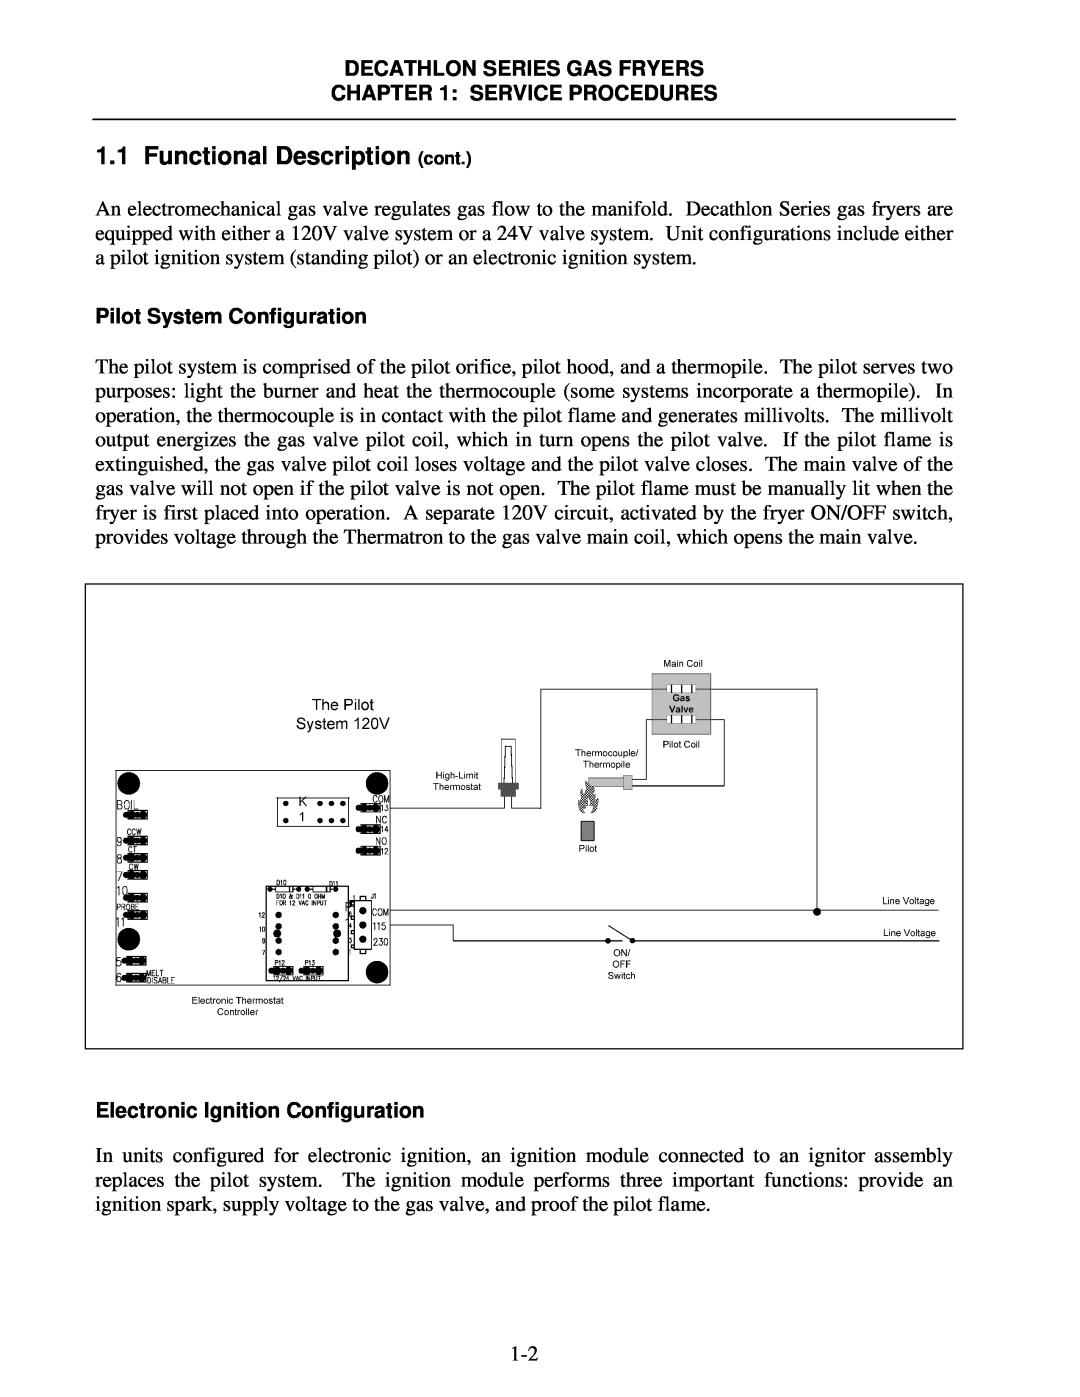 Frymaster CFD Functional Description cont, Decathlon Series Gas Fryers, Service Procedures, Pilot System Configuration 